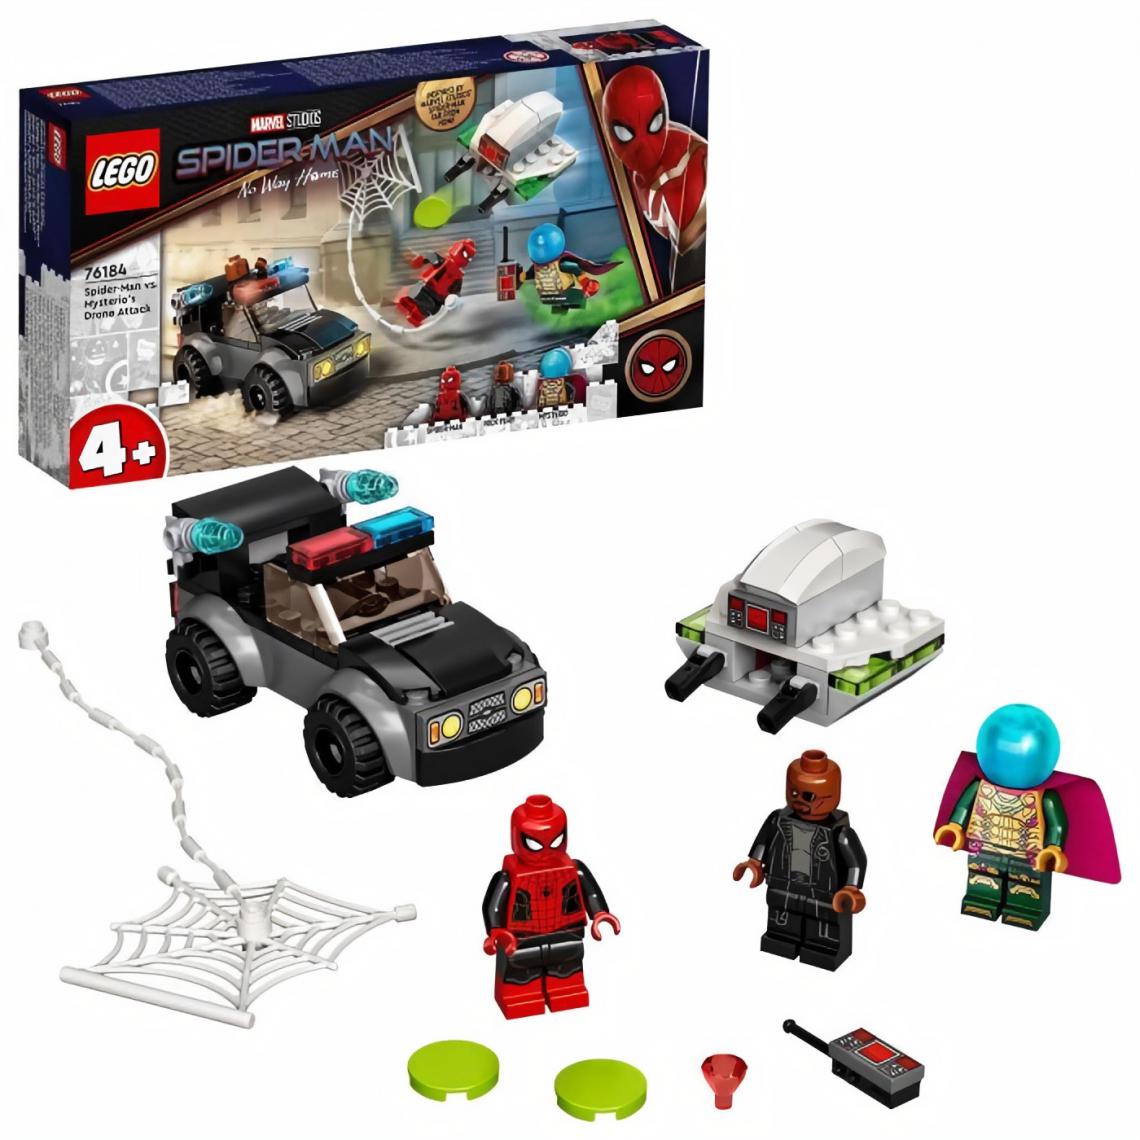 Lego - LEGO 76184 Marvel L'Attaque du Drone : Spider-Man contre Mystério, Jeu de Construction, Voiture Jouet pour Enfant des 4 ans - Briques Lego